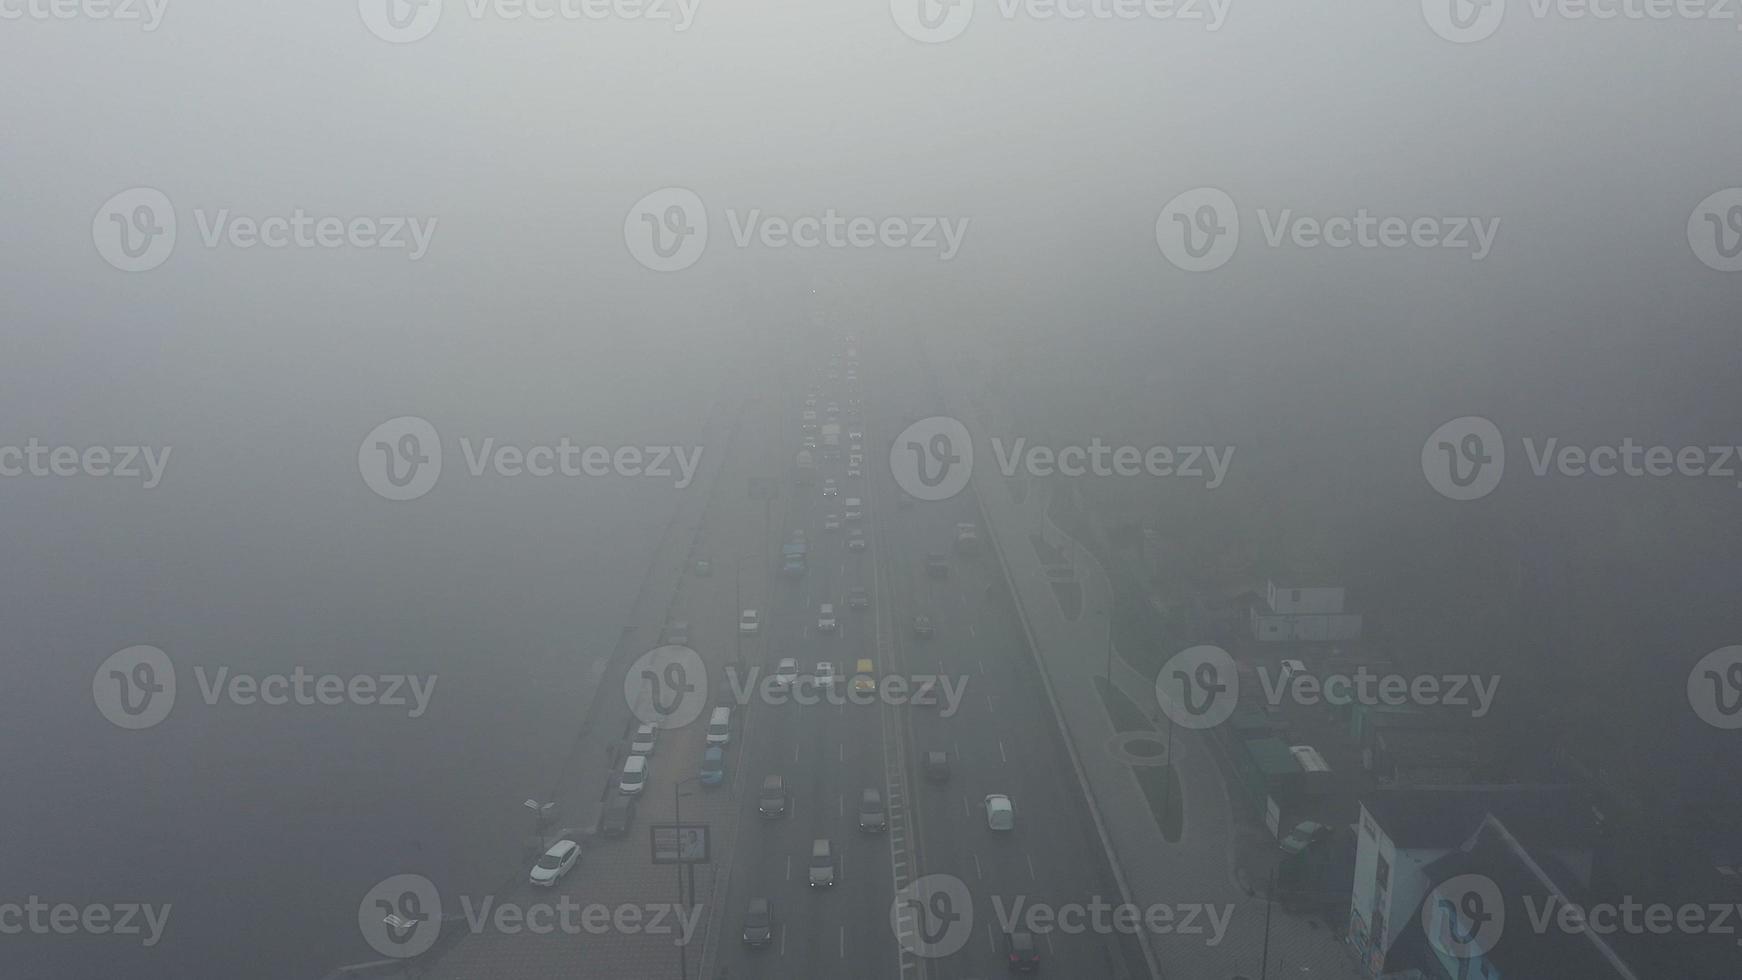 en stad täckt i dimma. stad trafik, antenn se foto